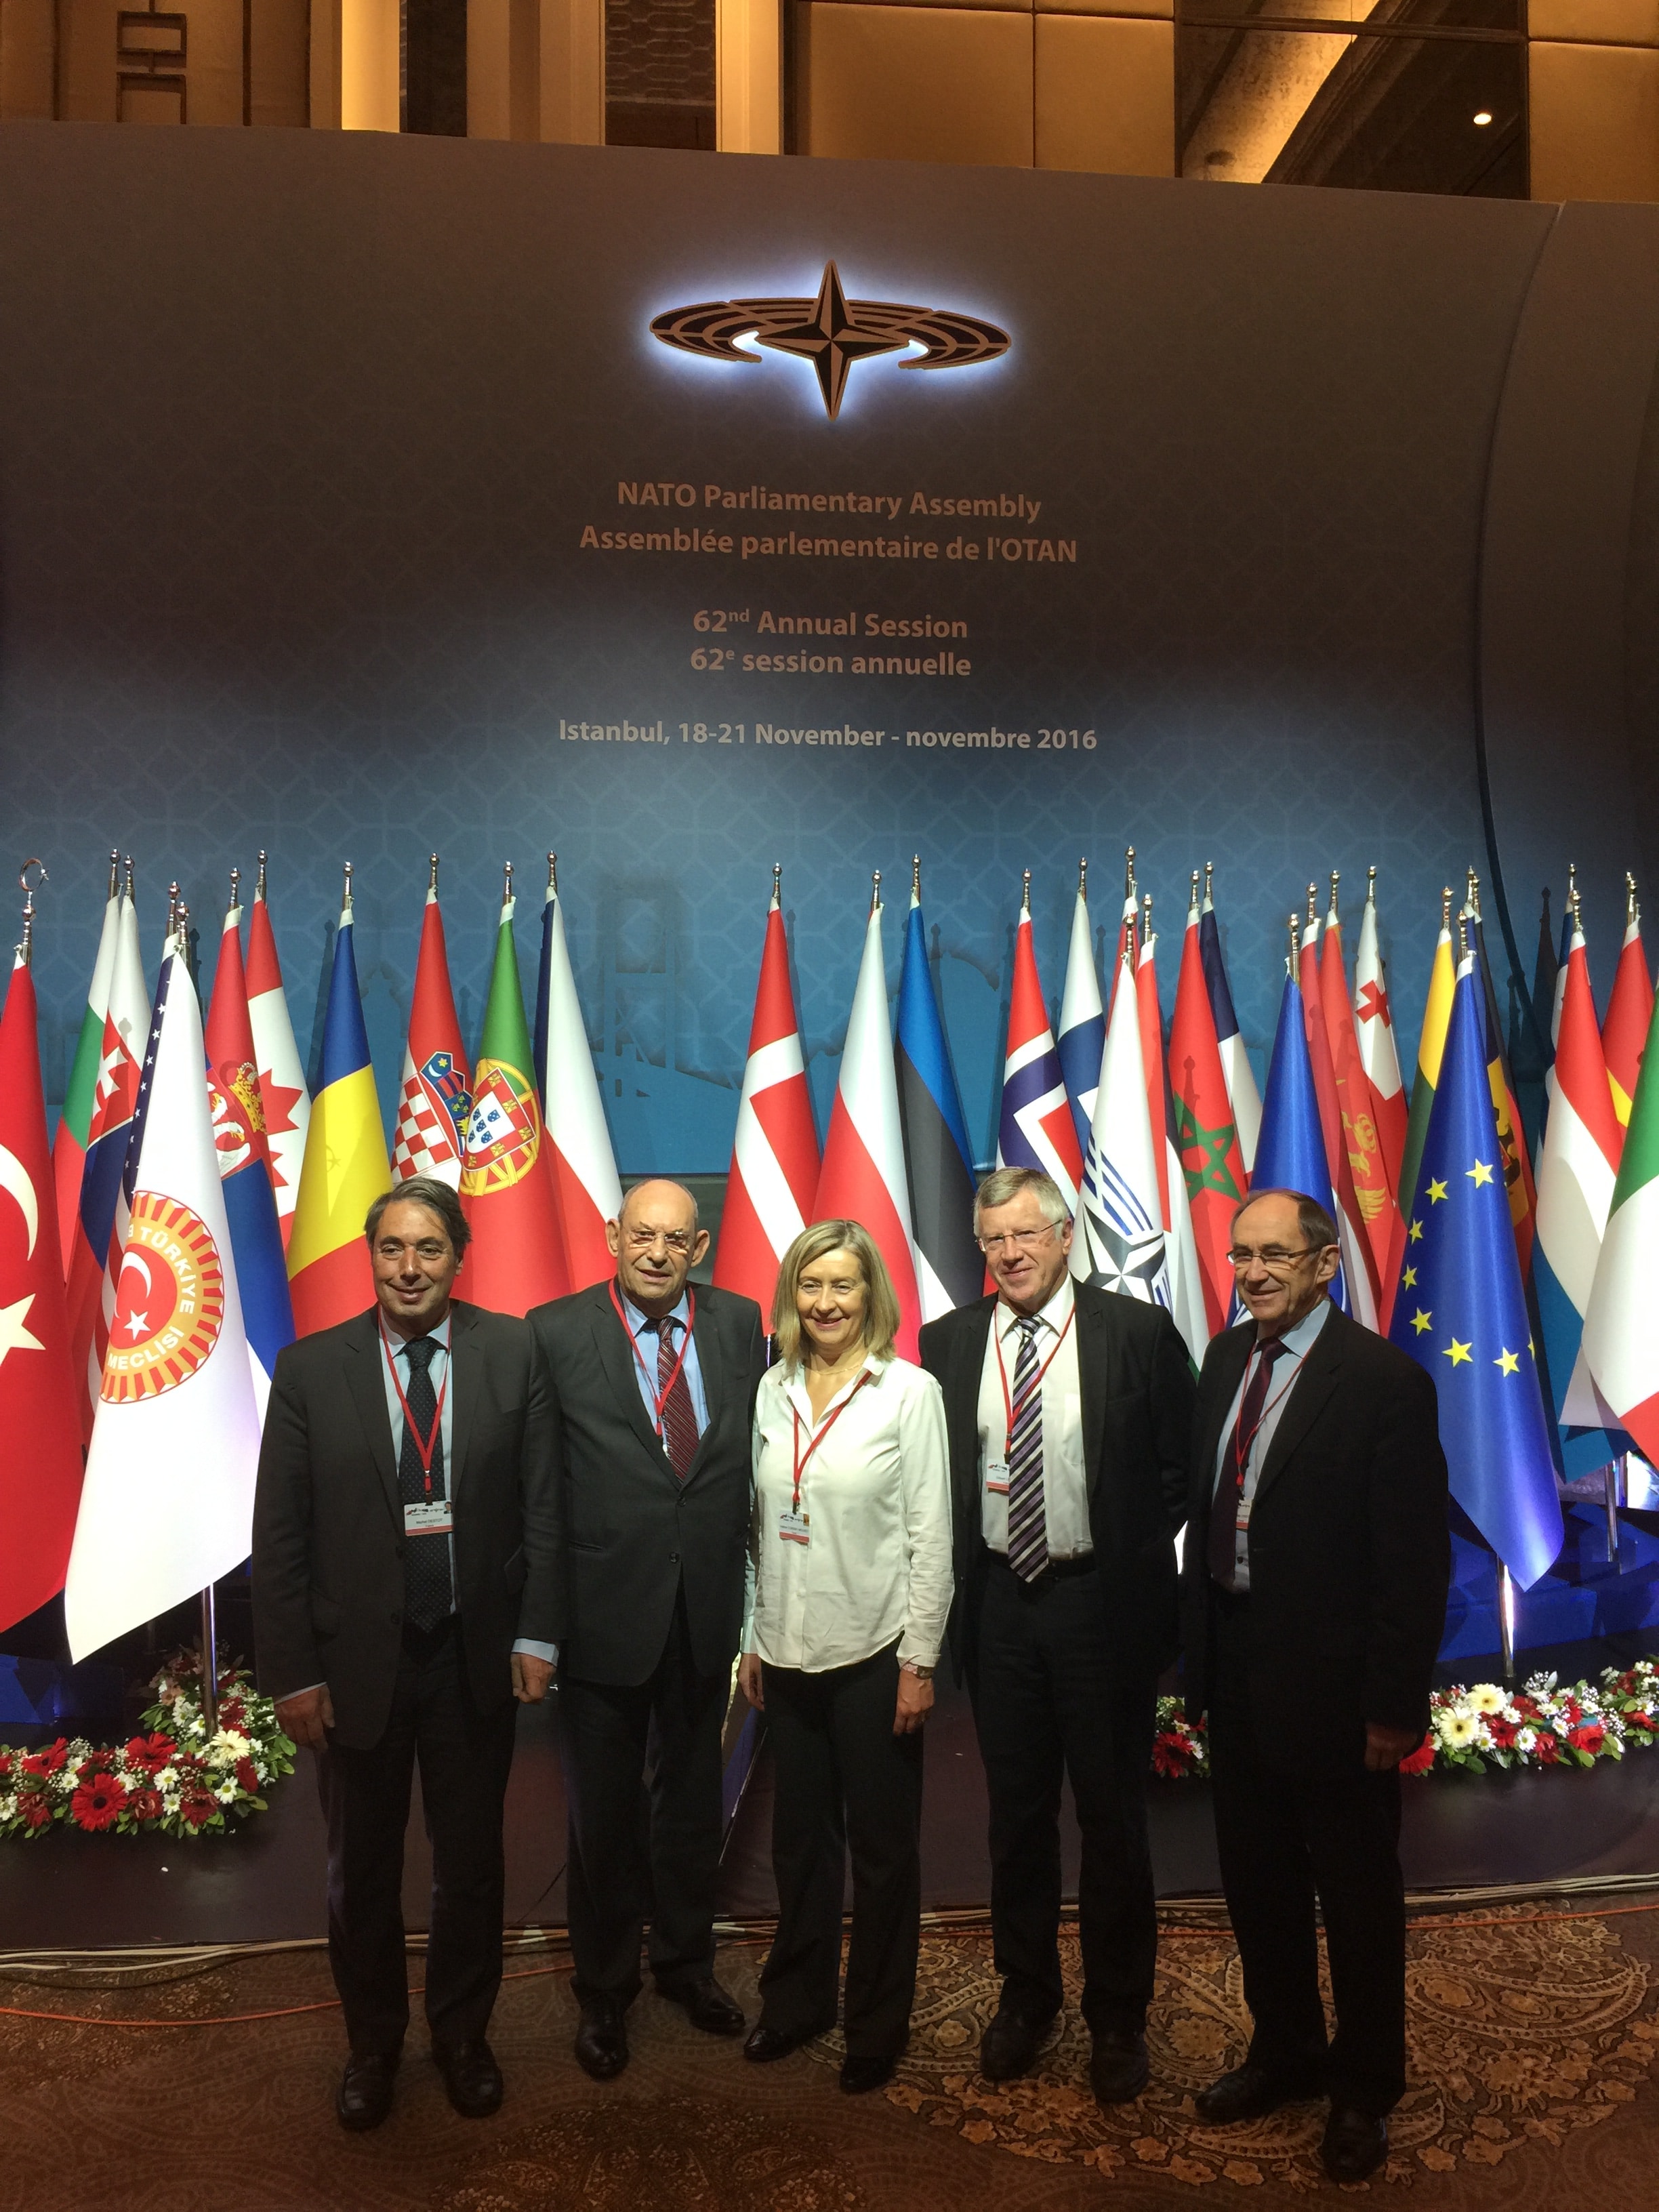 Assemblée parlementaire de l’OTAN à Istanbul (18-21 novembre 2016)